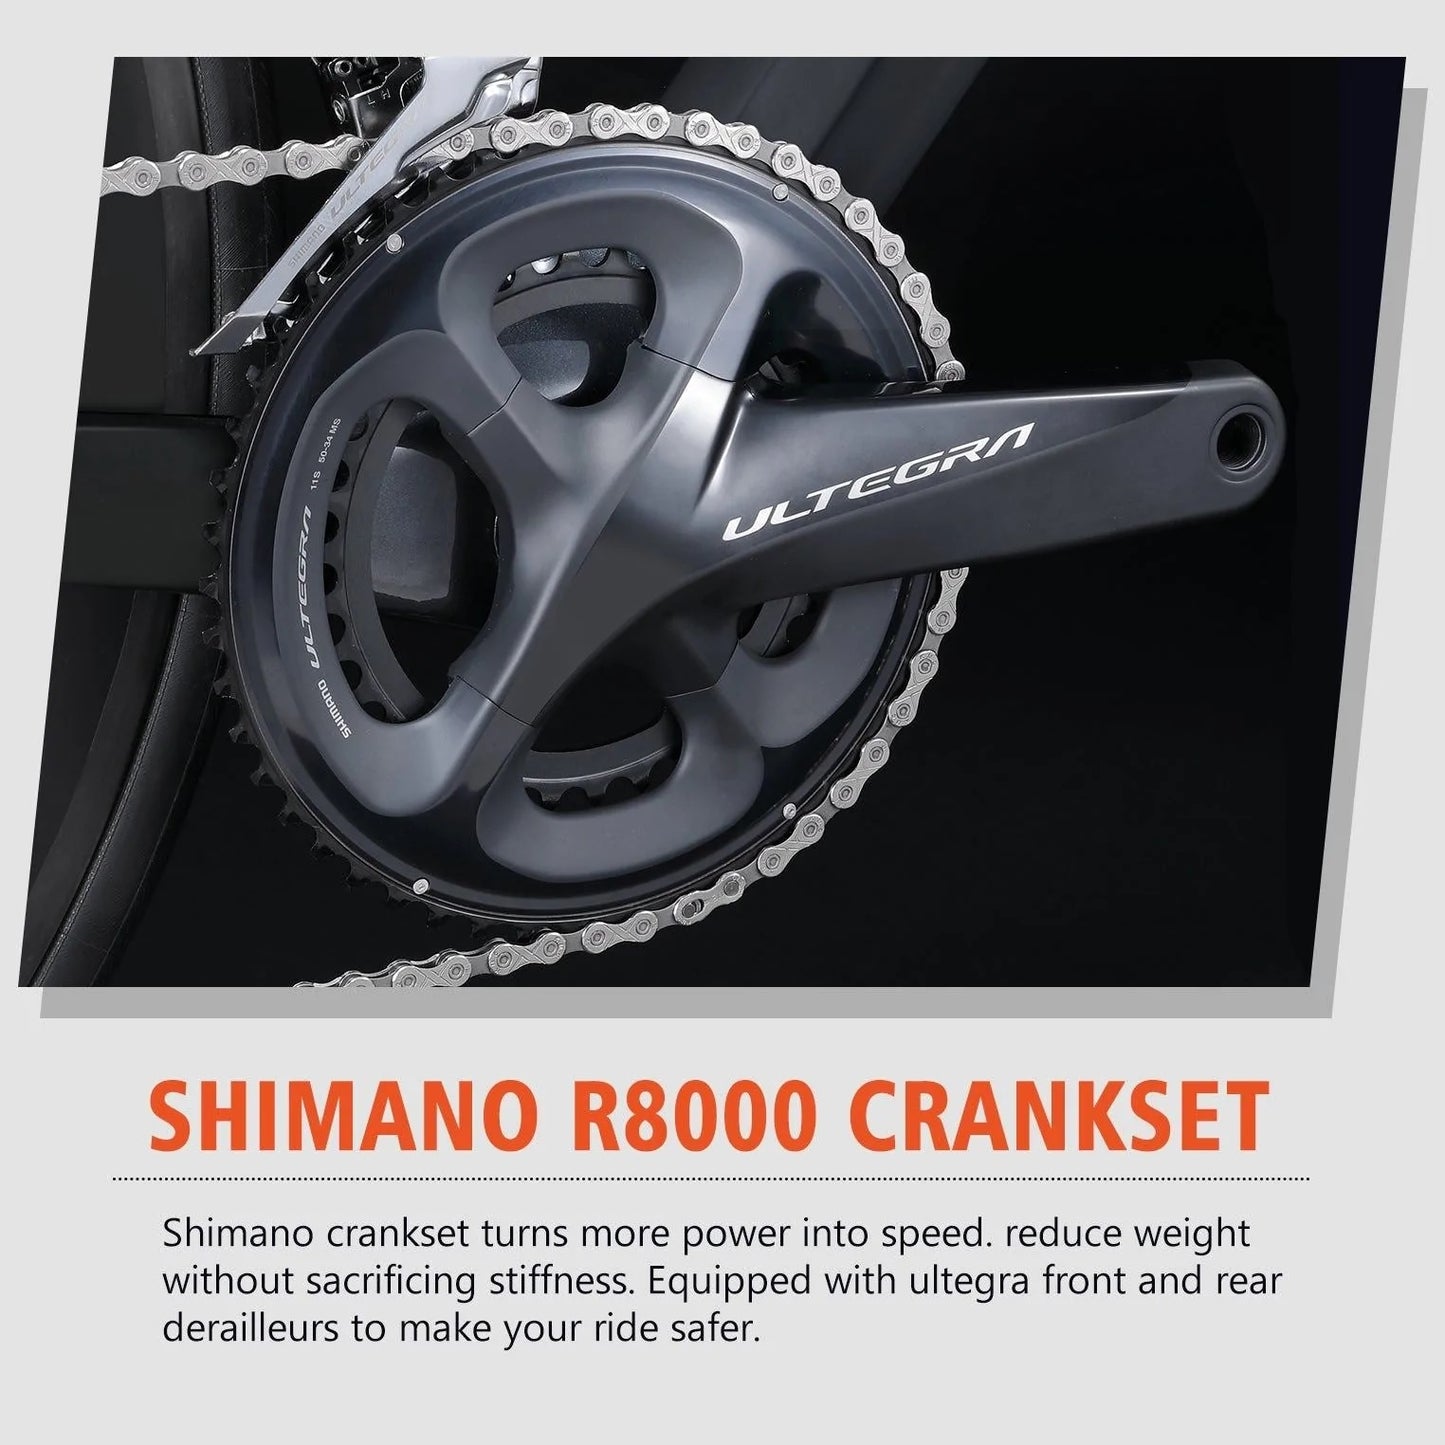 Bici da ghiaia in carbonio RINOS Sandman5.0 Shimano R8000 Ultegra